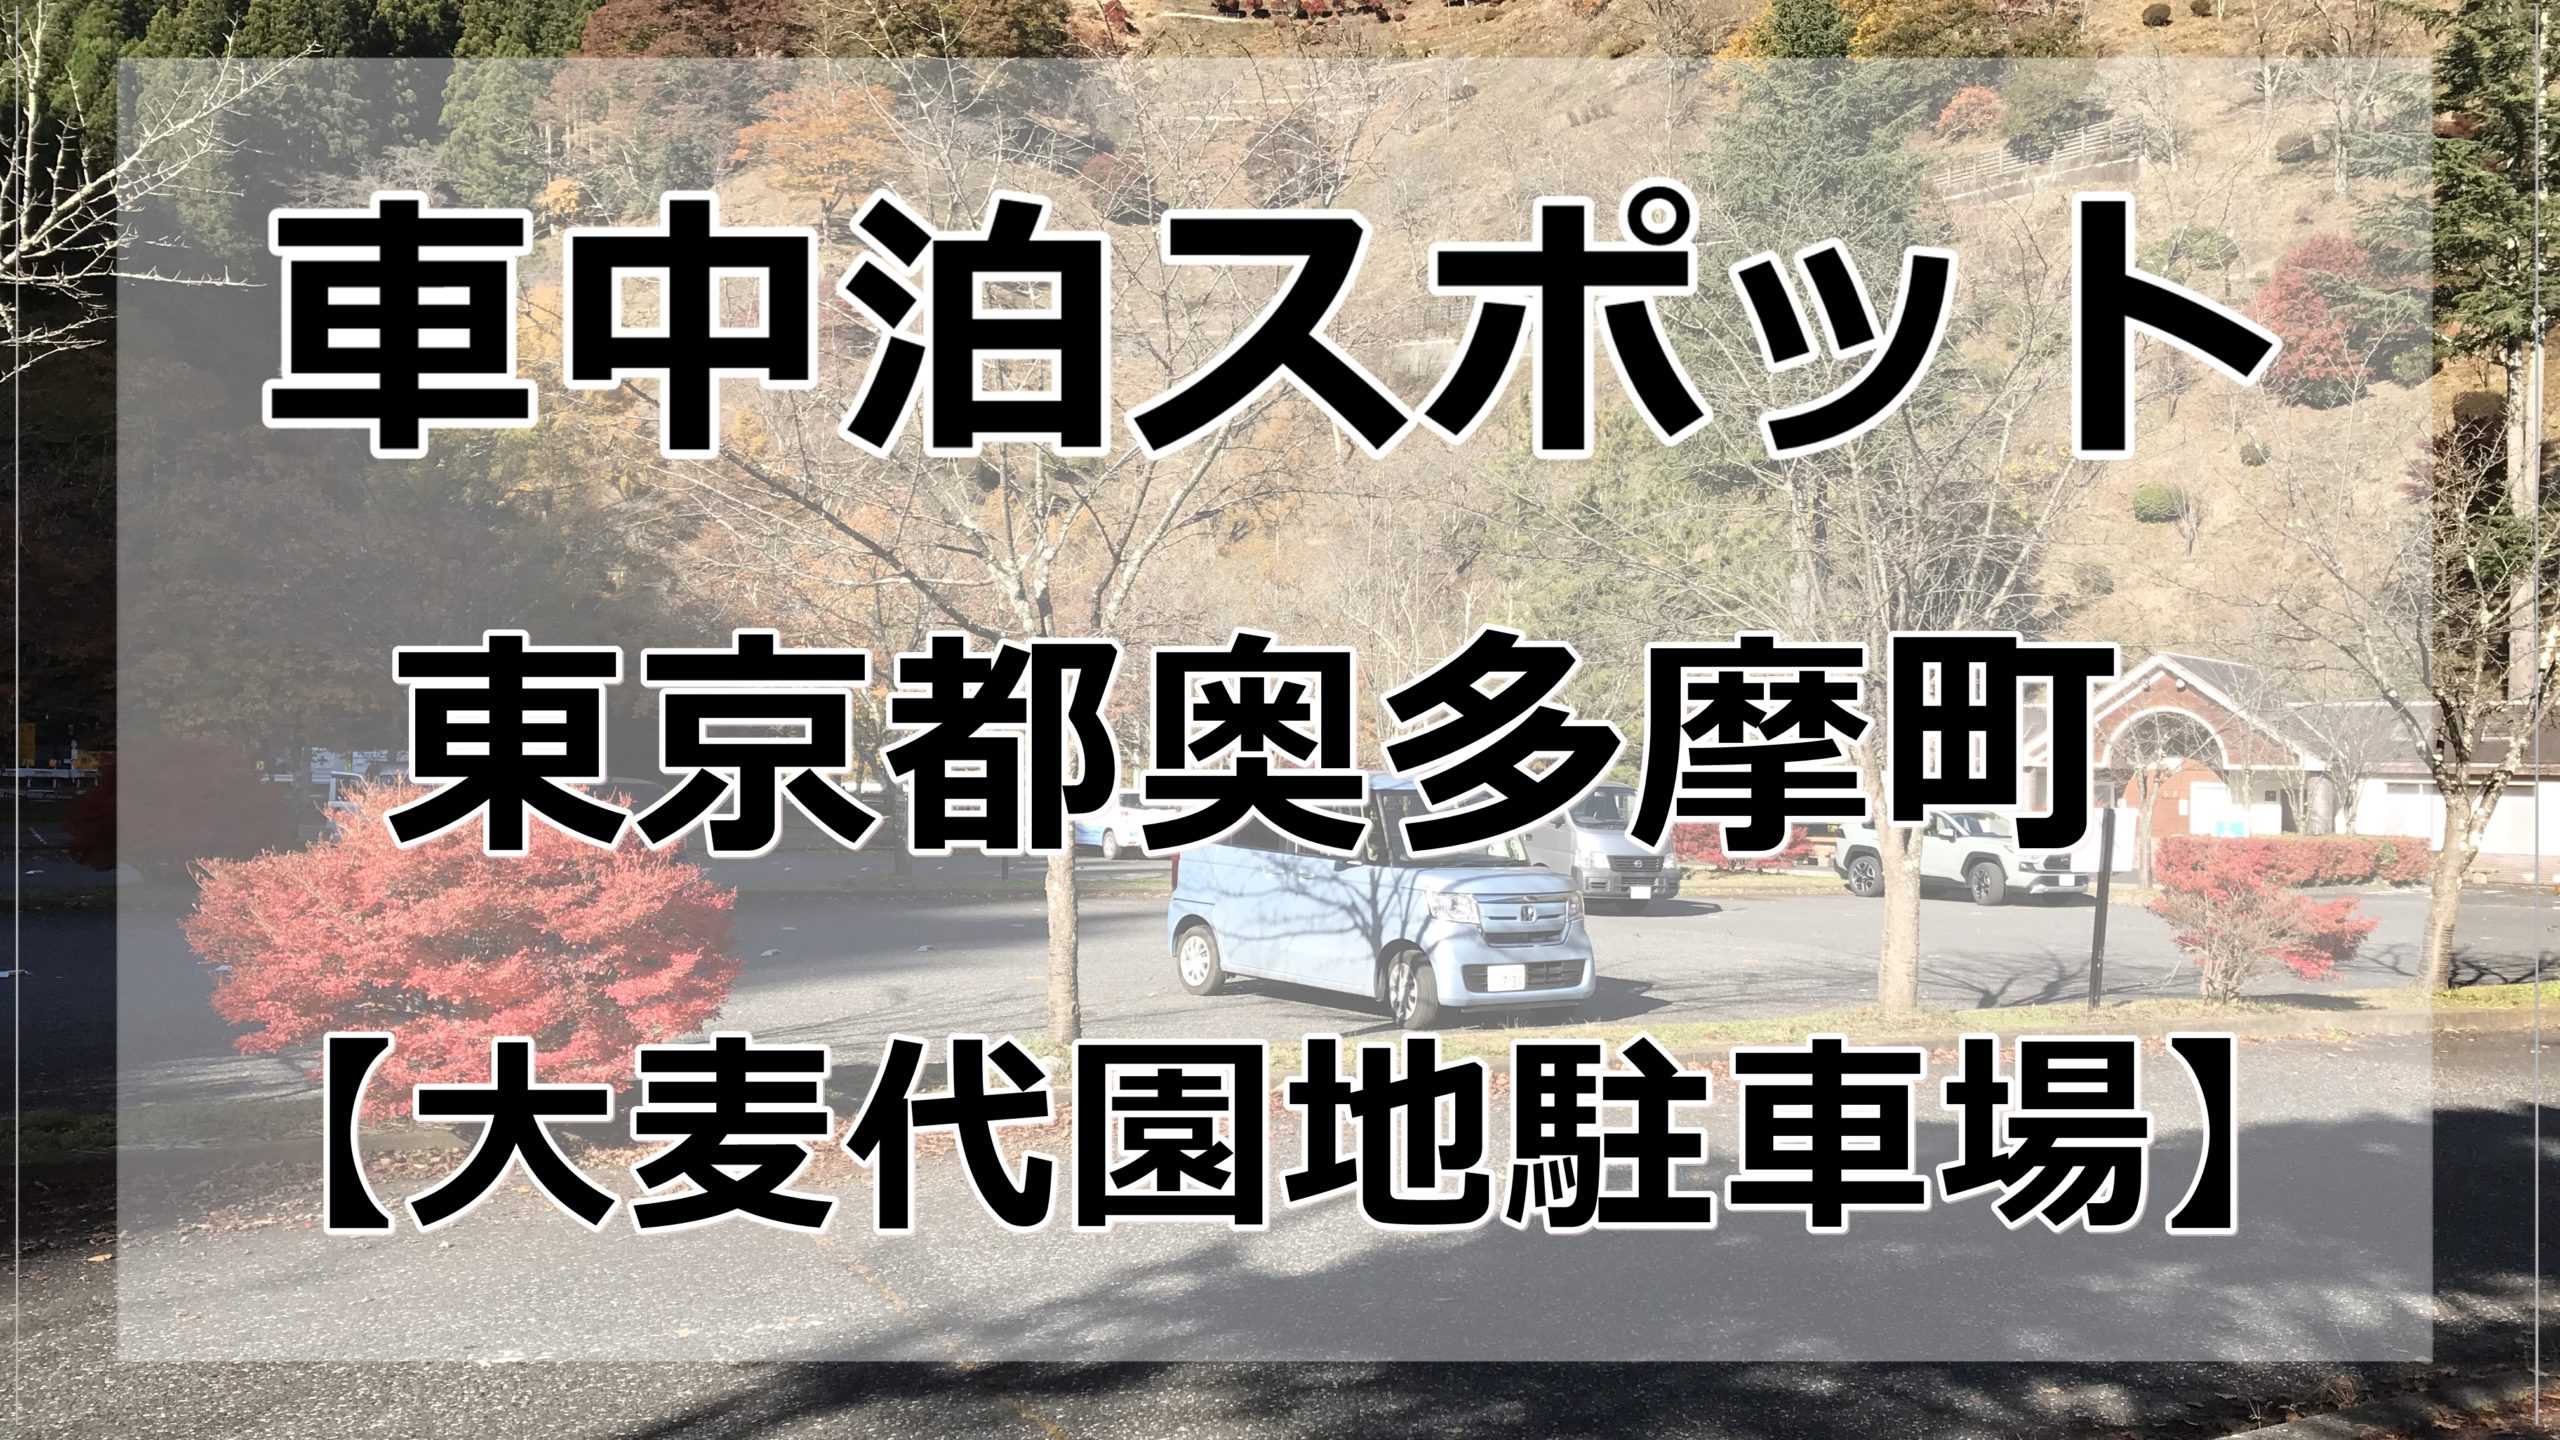 絶メシ 東京奥多摩の大麦代園地駐車場で車中泊無料でできます 車中泊女子 初心者向けバンライフブログ